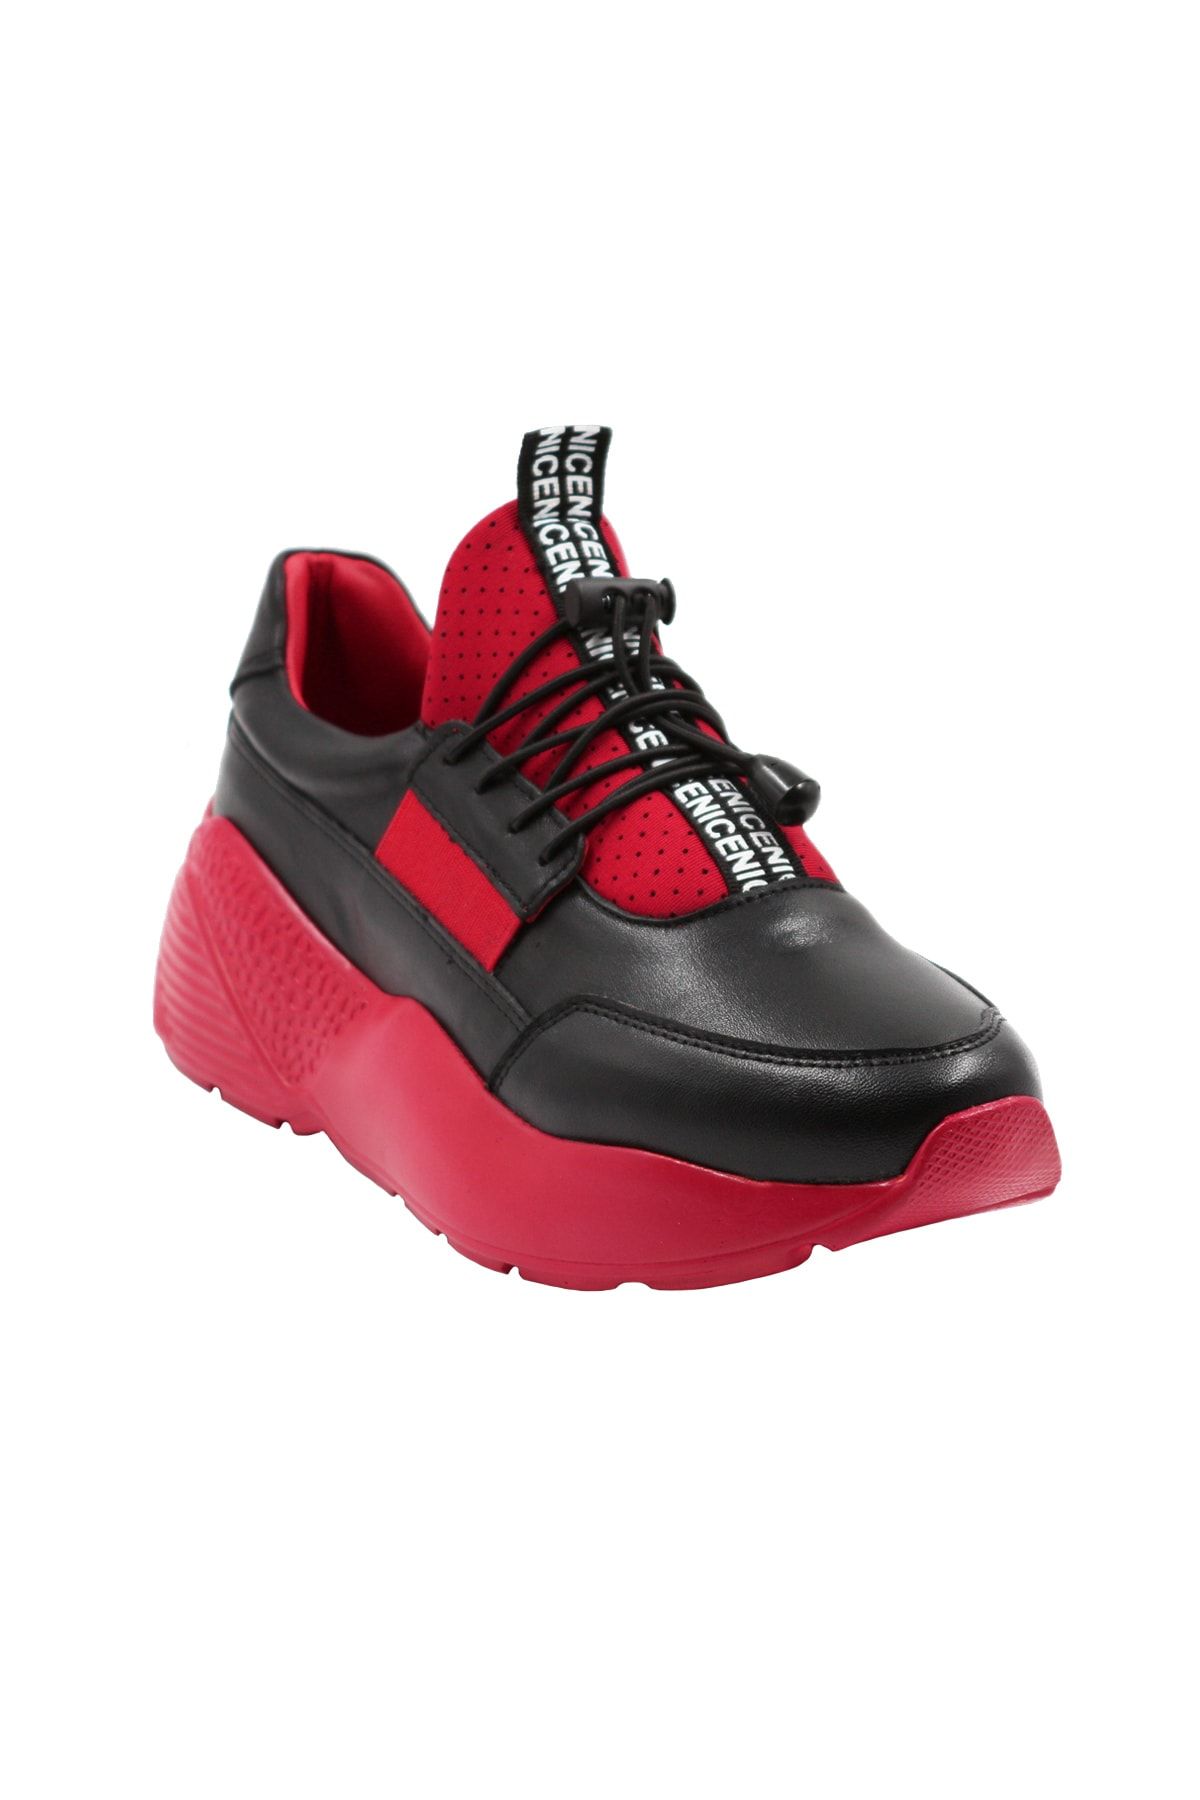 Abbondare Hakiki Deri Siyah-kırmızı Kadın Spor Ayakkabı-sneaker